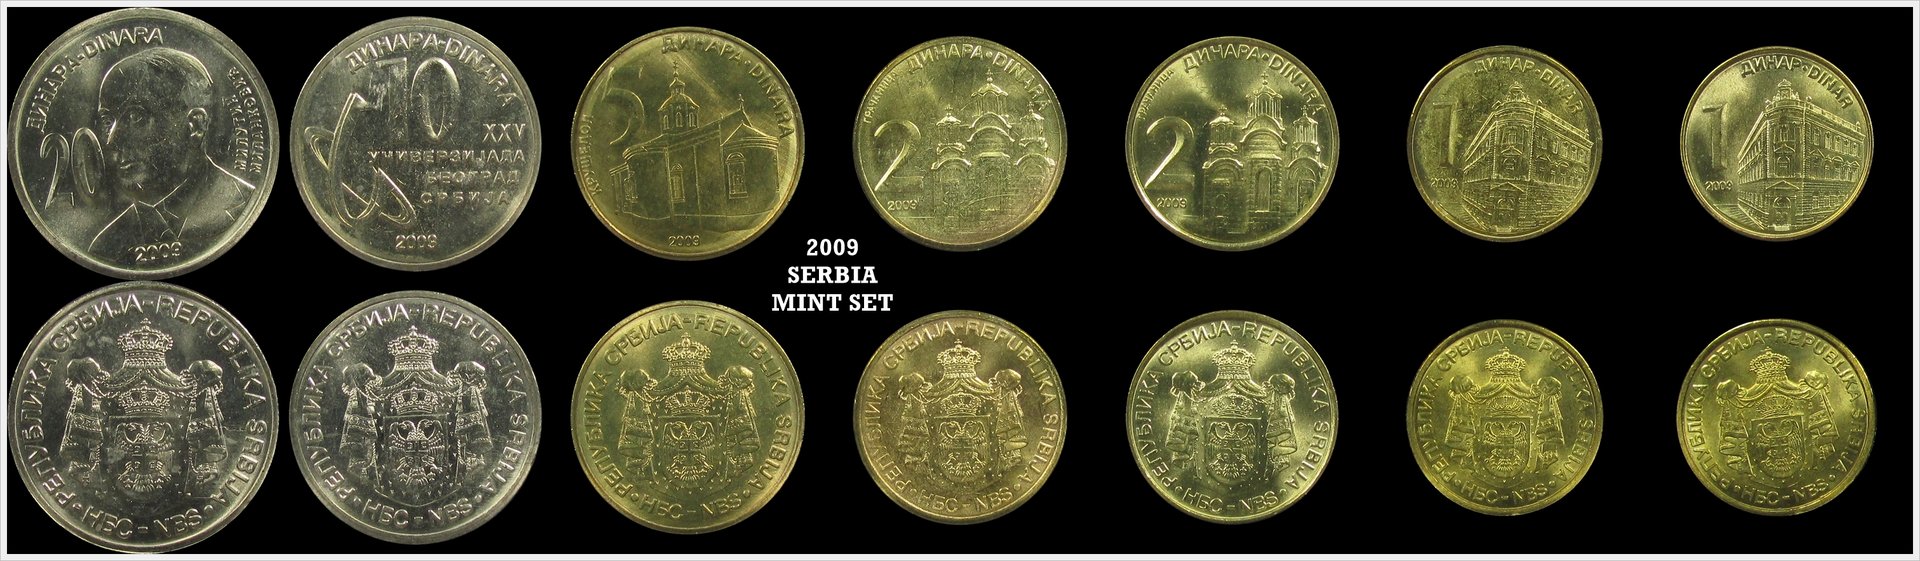 Serbia 2009 Mint Set.jpg